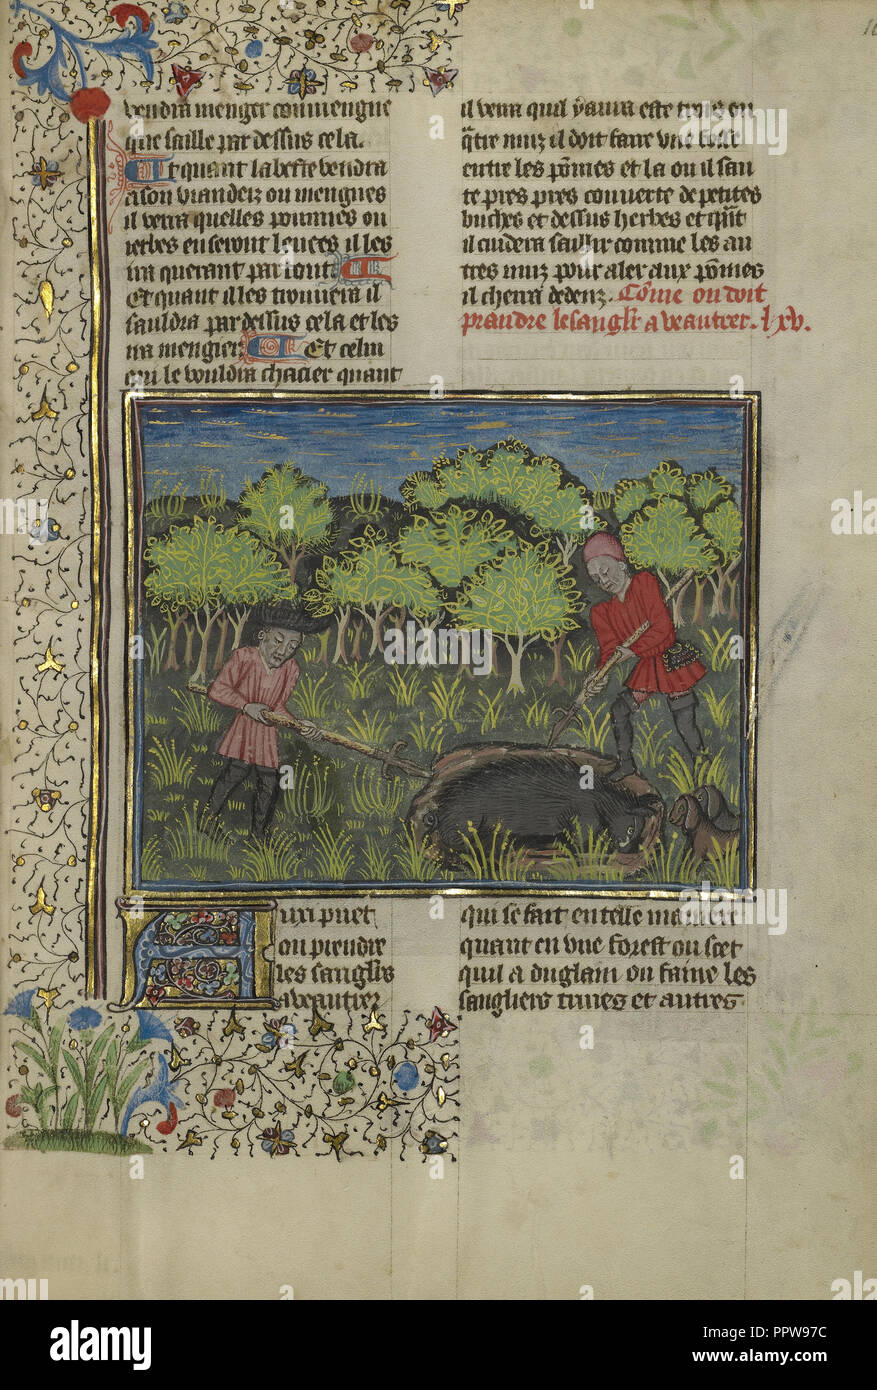 Un chasseur blessé un sanglier pris dans une fosse, Bretagne, France ; environ 1430 - 1440 Tempera ; couleurs, peinture or, la peinture argentée Banque D'Images